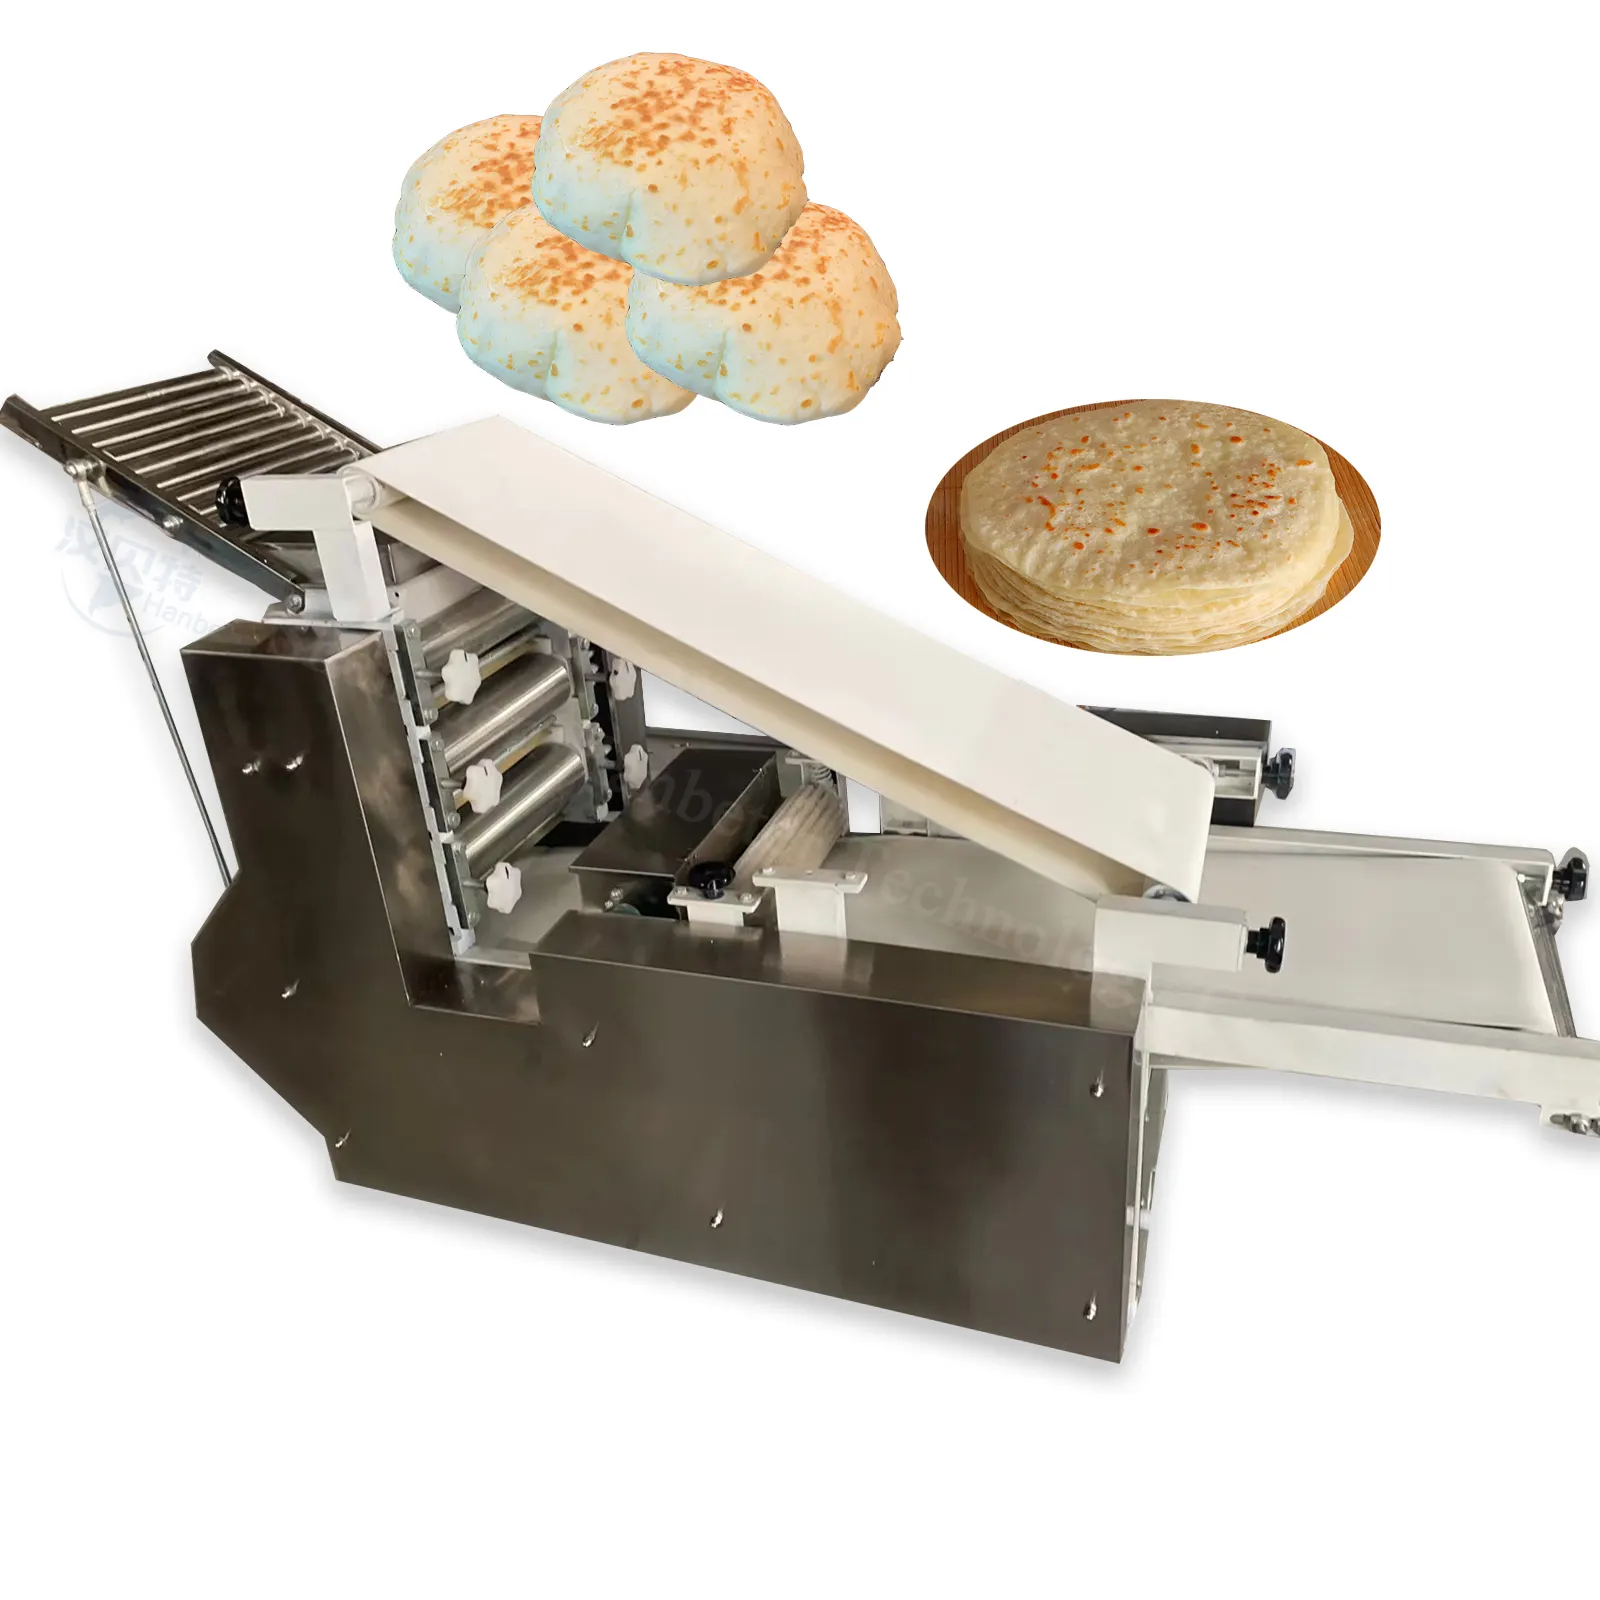 Tatlı nachos tortilla cips roti yapma makinesi ev kullanımı için rotomatic yapımcısı